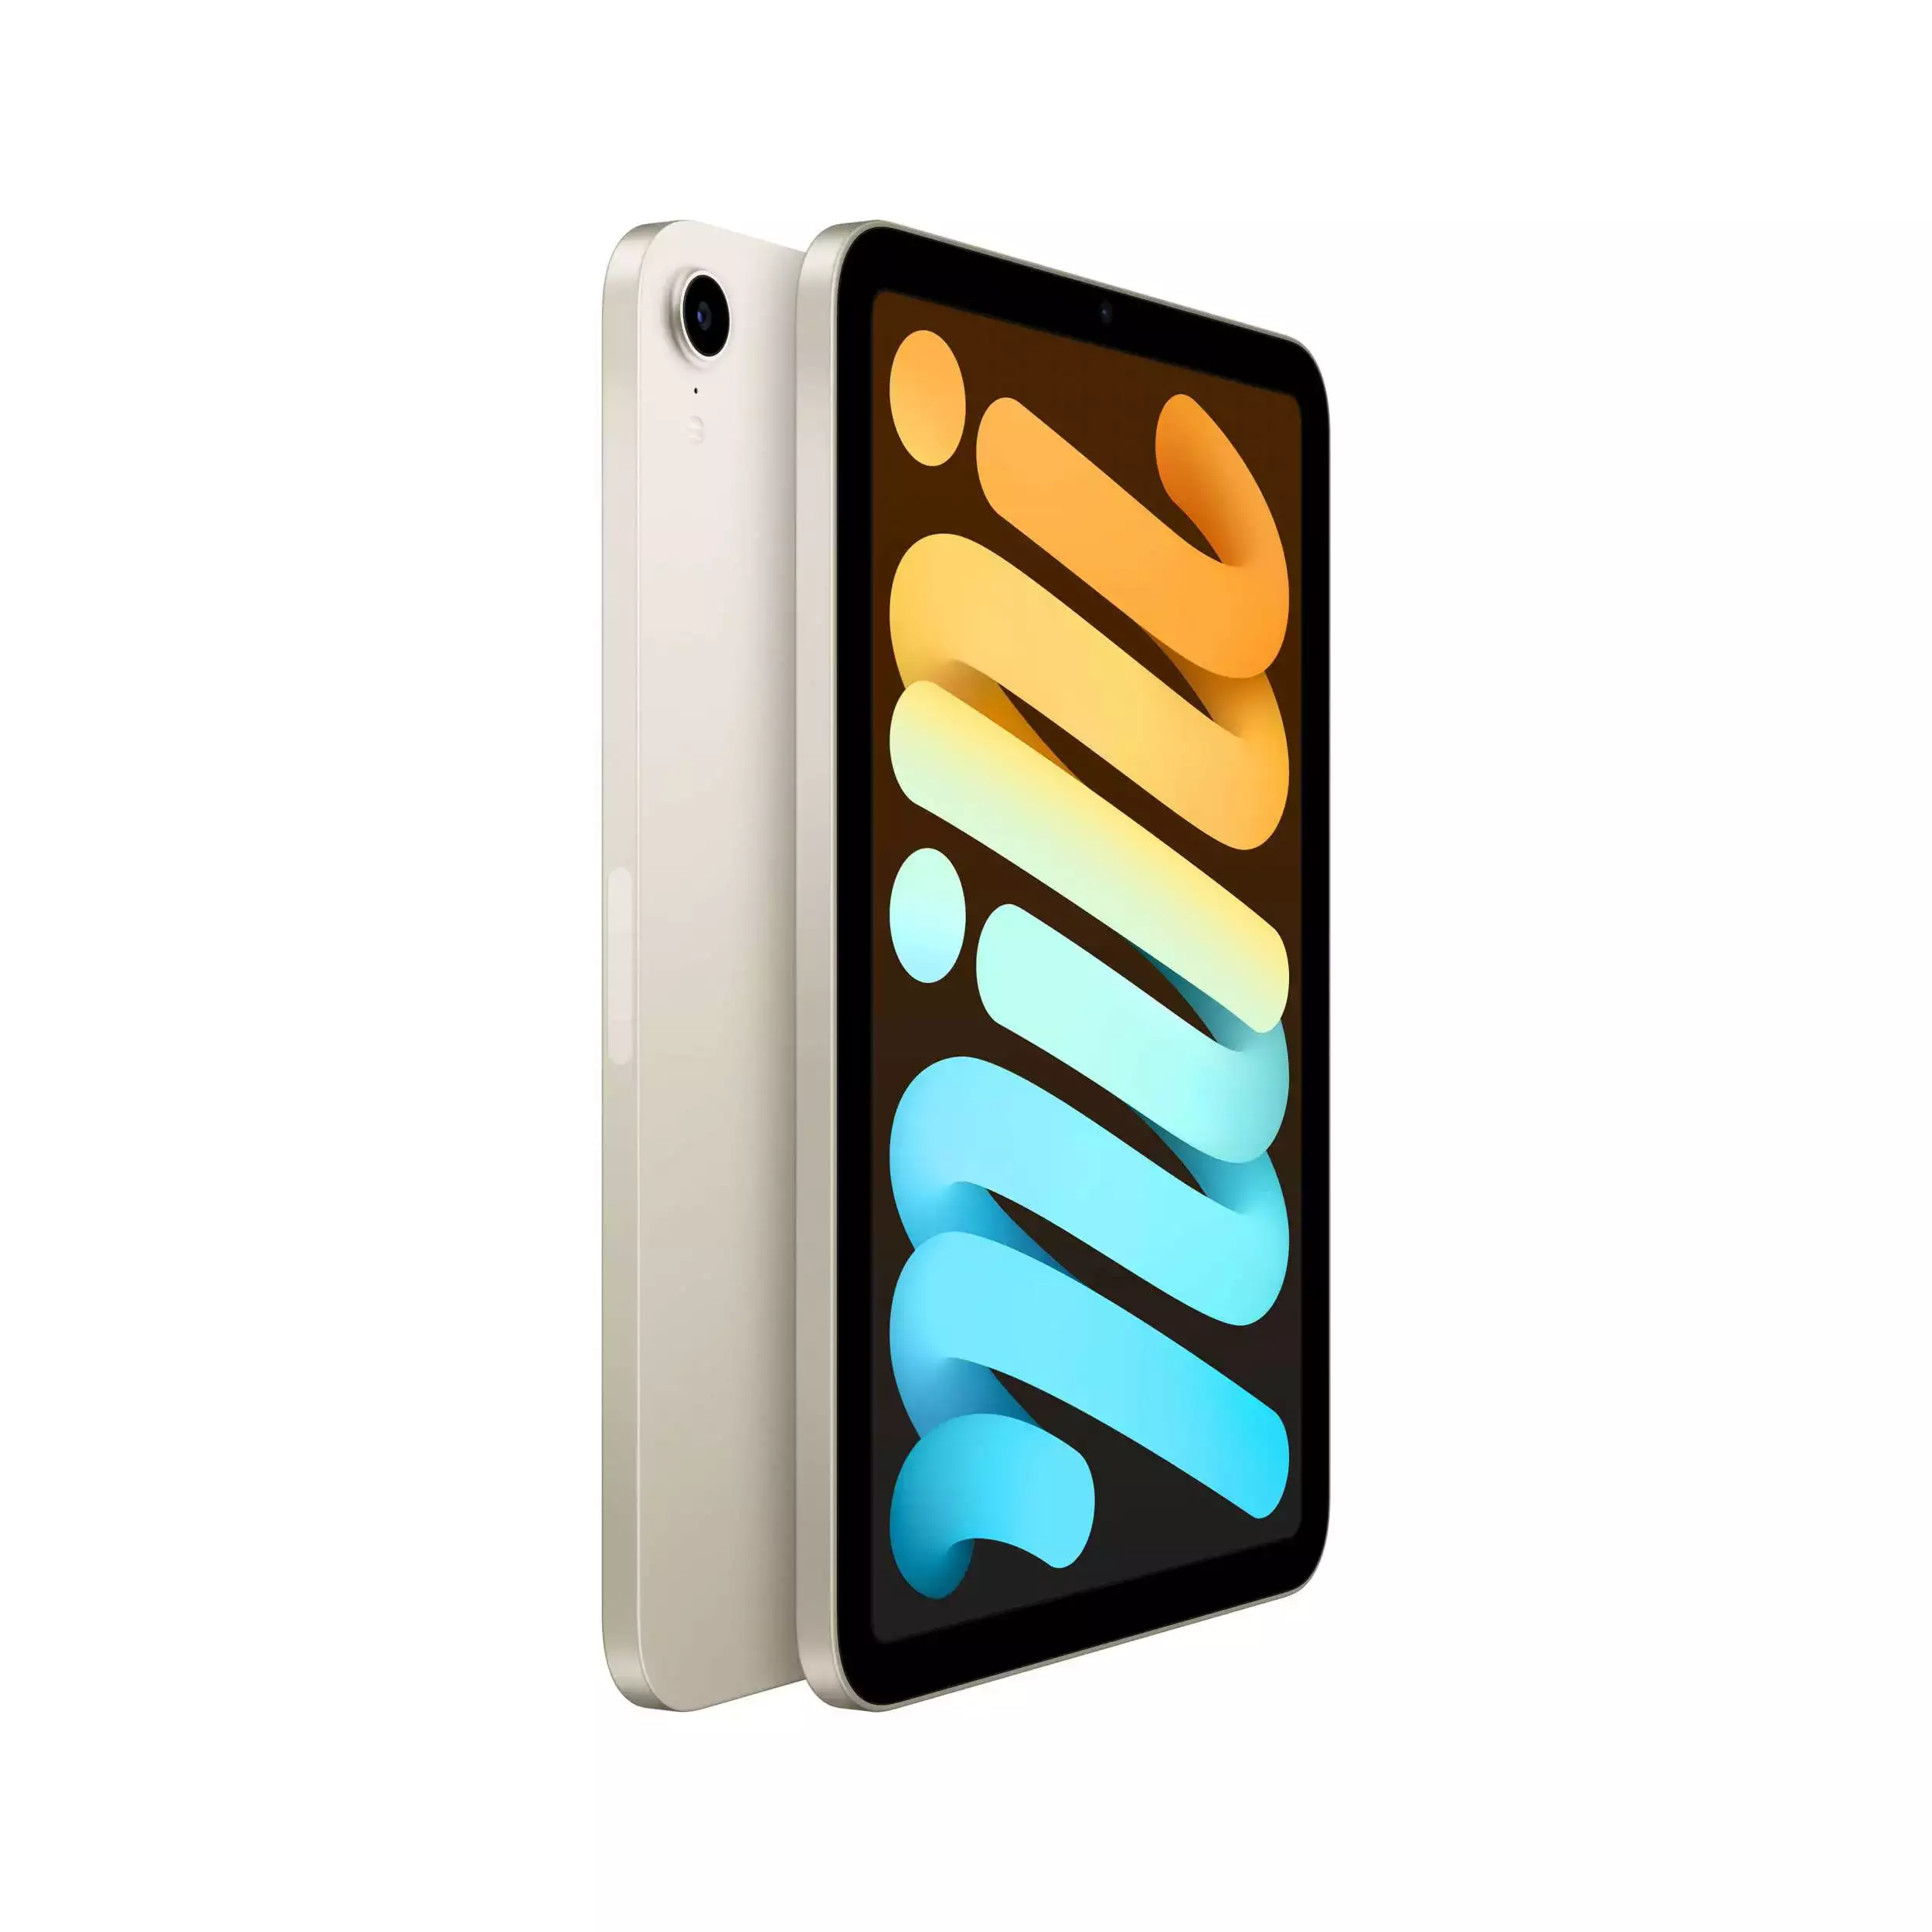 iPad mini 8.3 inç Wi-Fi 64GB Yıldız Işığı MK7P3TU/A